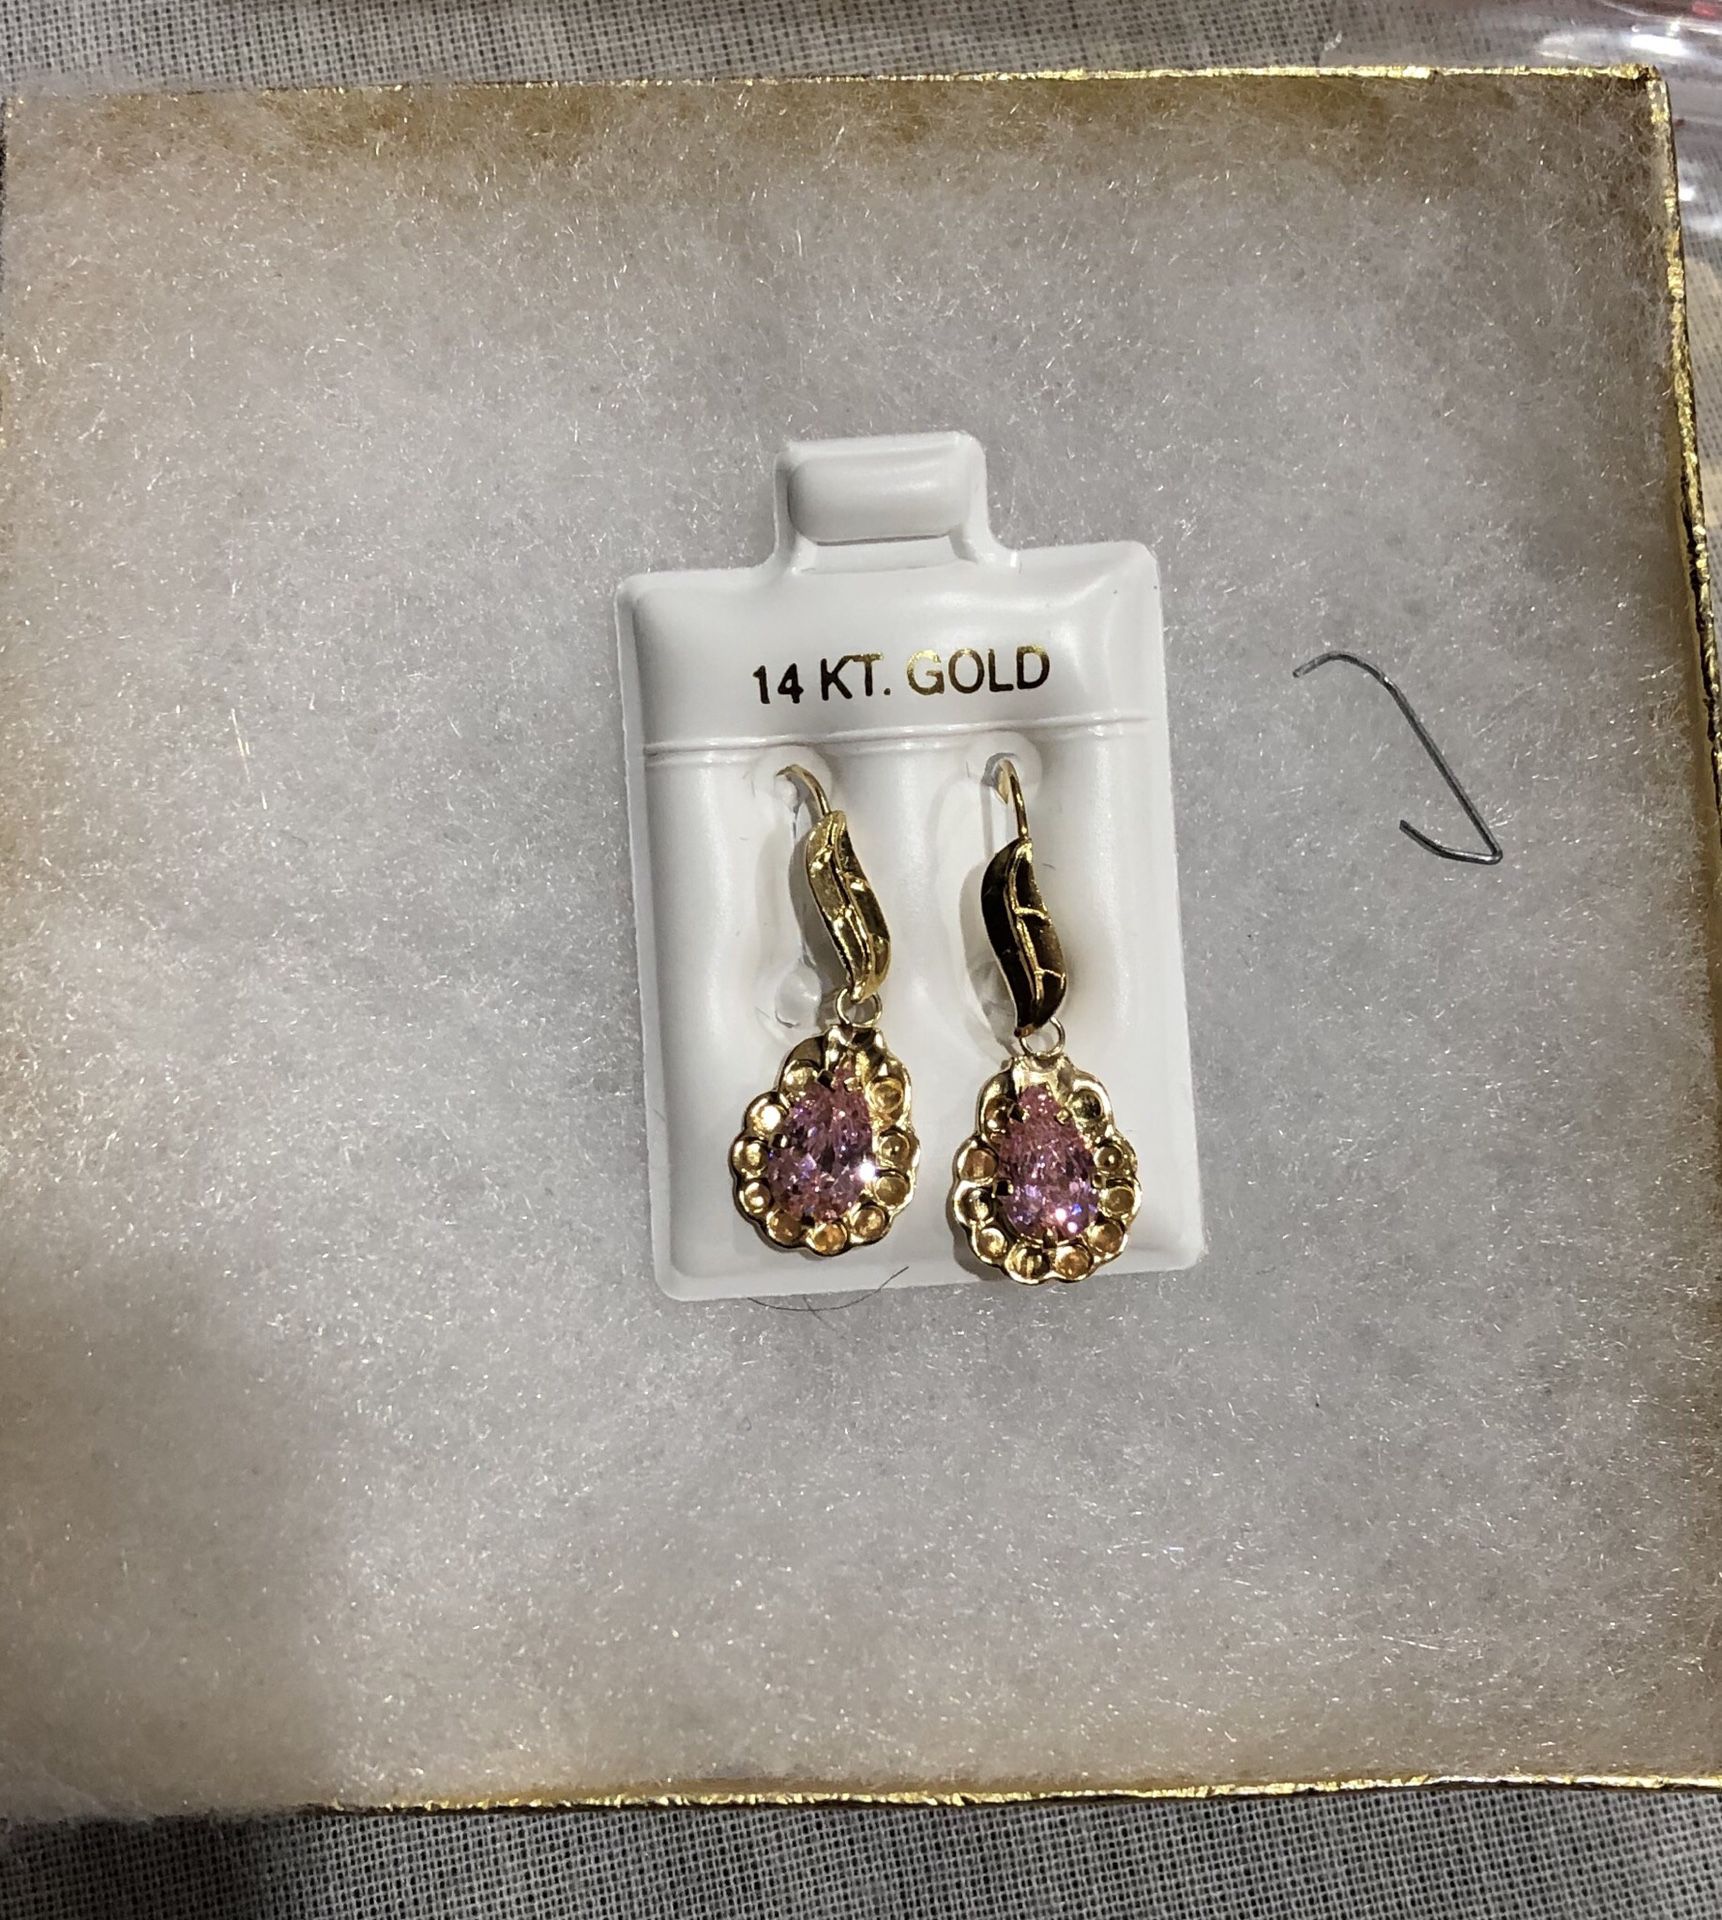 14kt Italian Gold Earrings $75